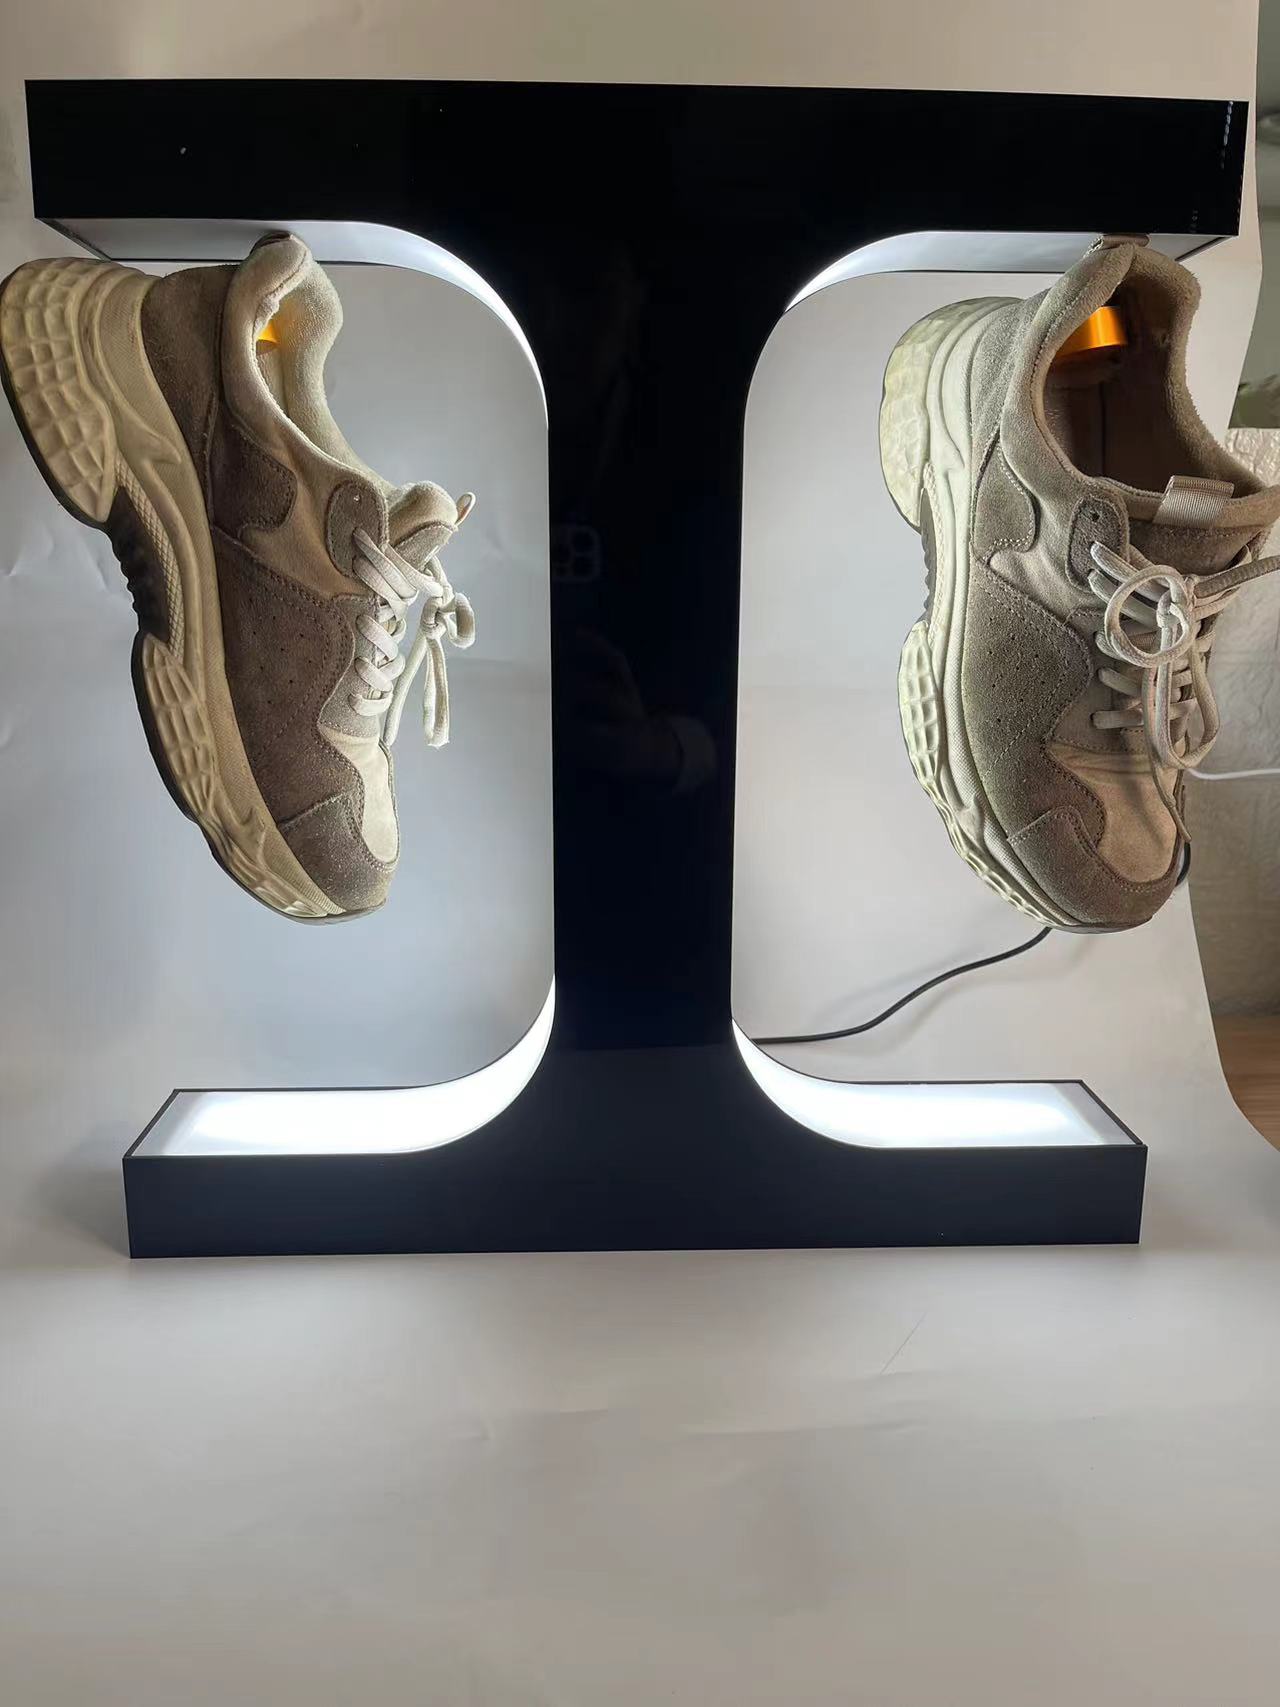 / Livraison gratuite Lévitation magnétique Auto Spinning Floating Double Shoes Sneaker Afficher Stand avec lumière LED